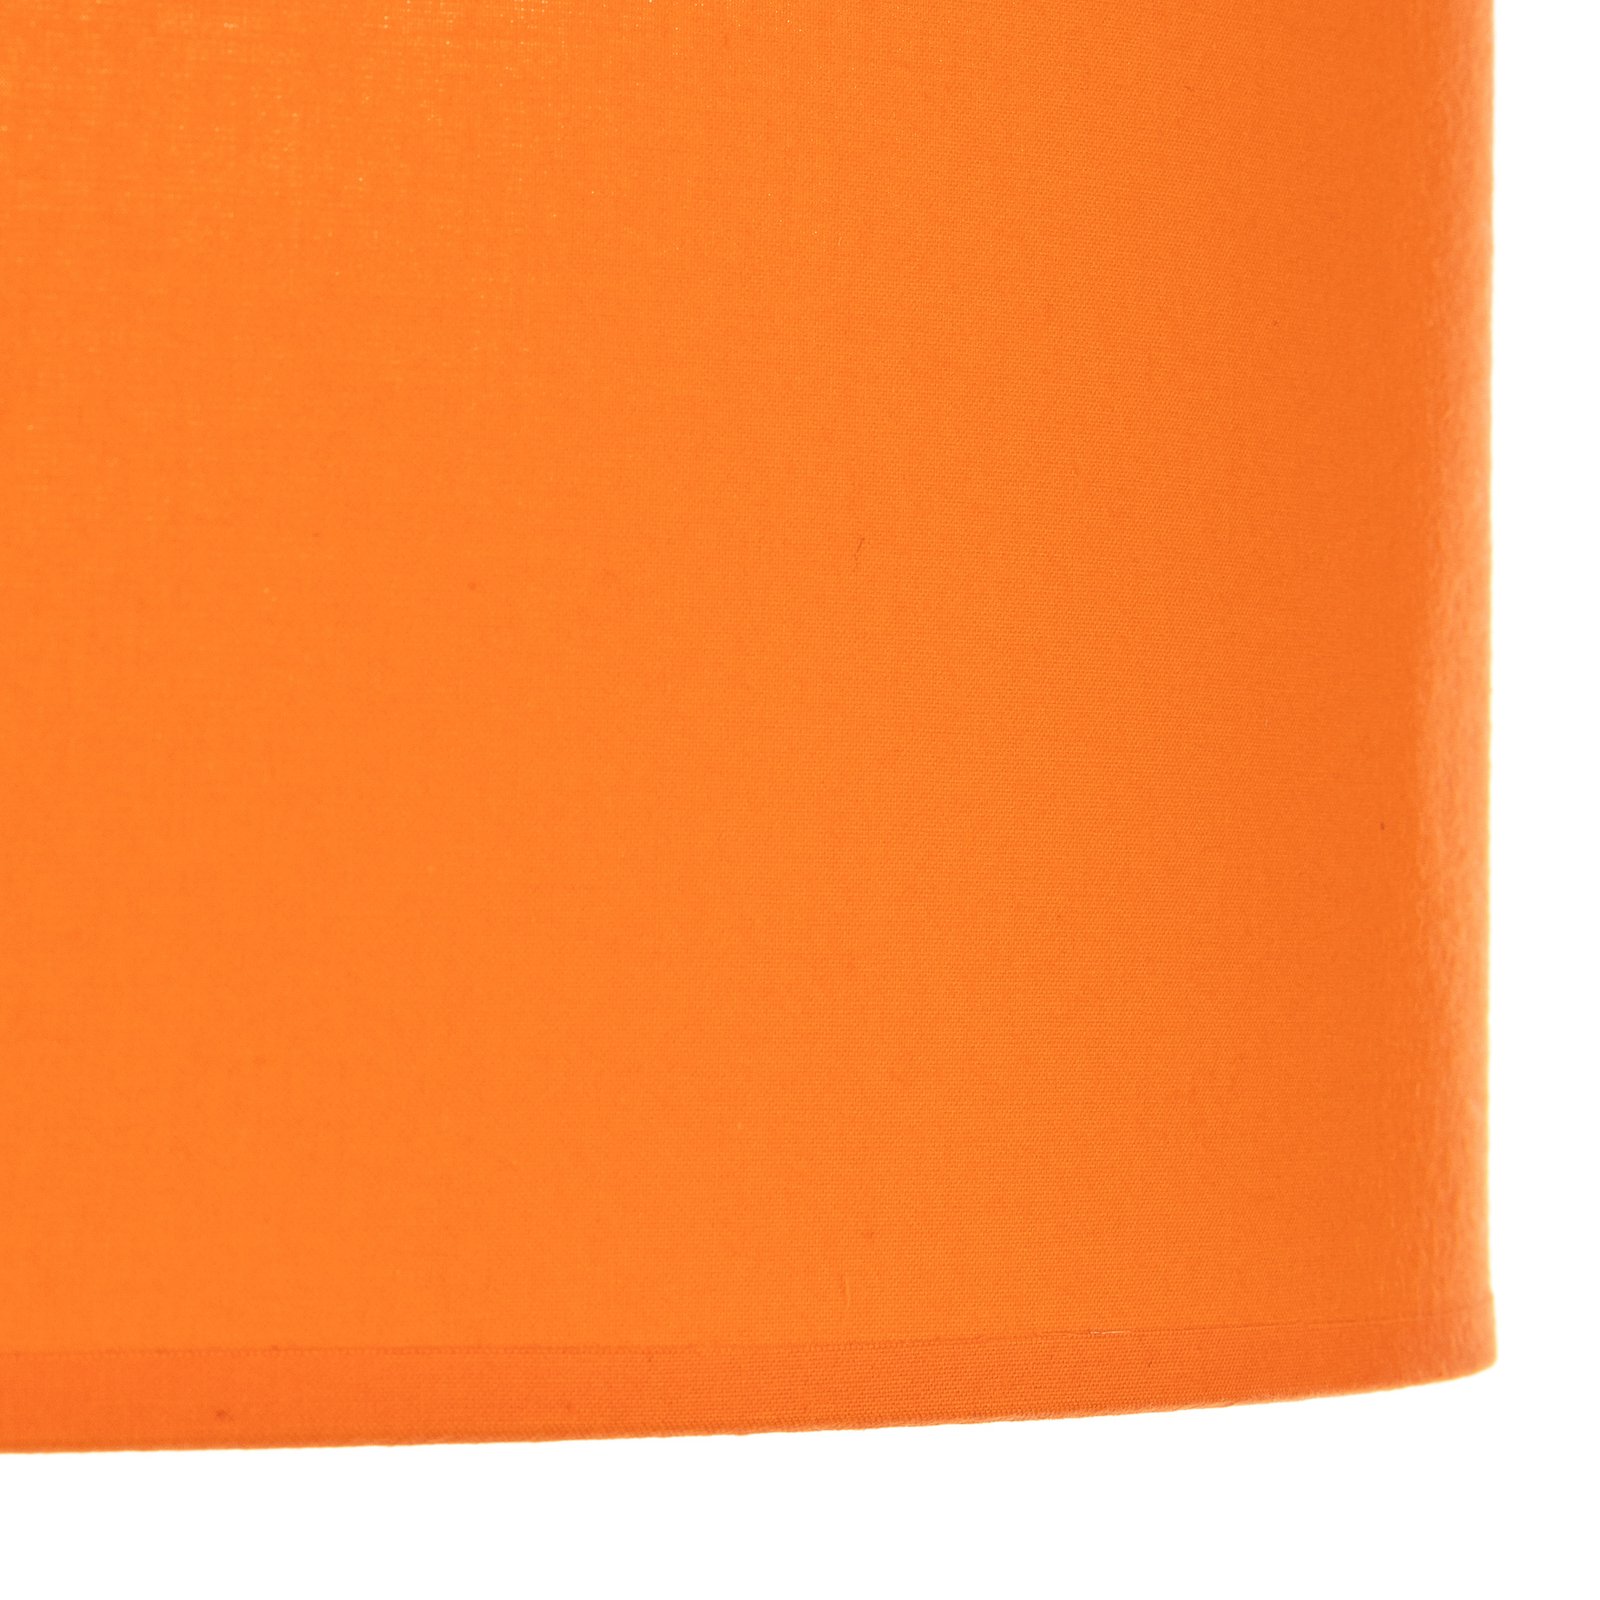 Euluna rulltekk, riidest varjund oranž, Ø 50 cm